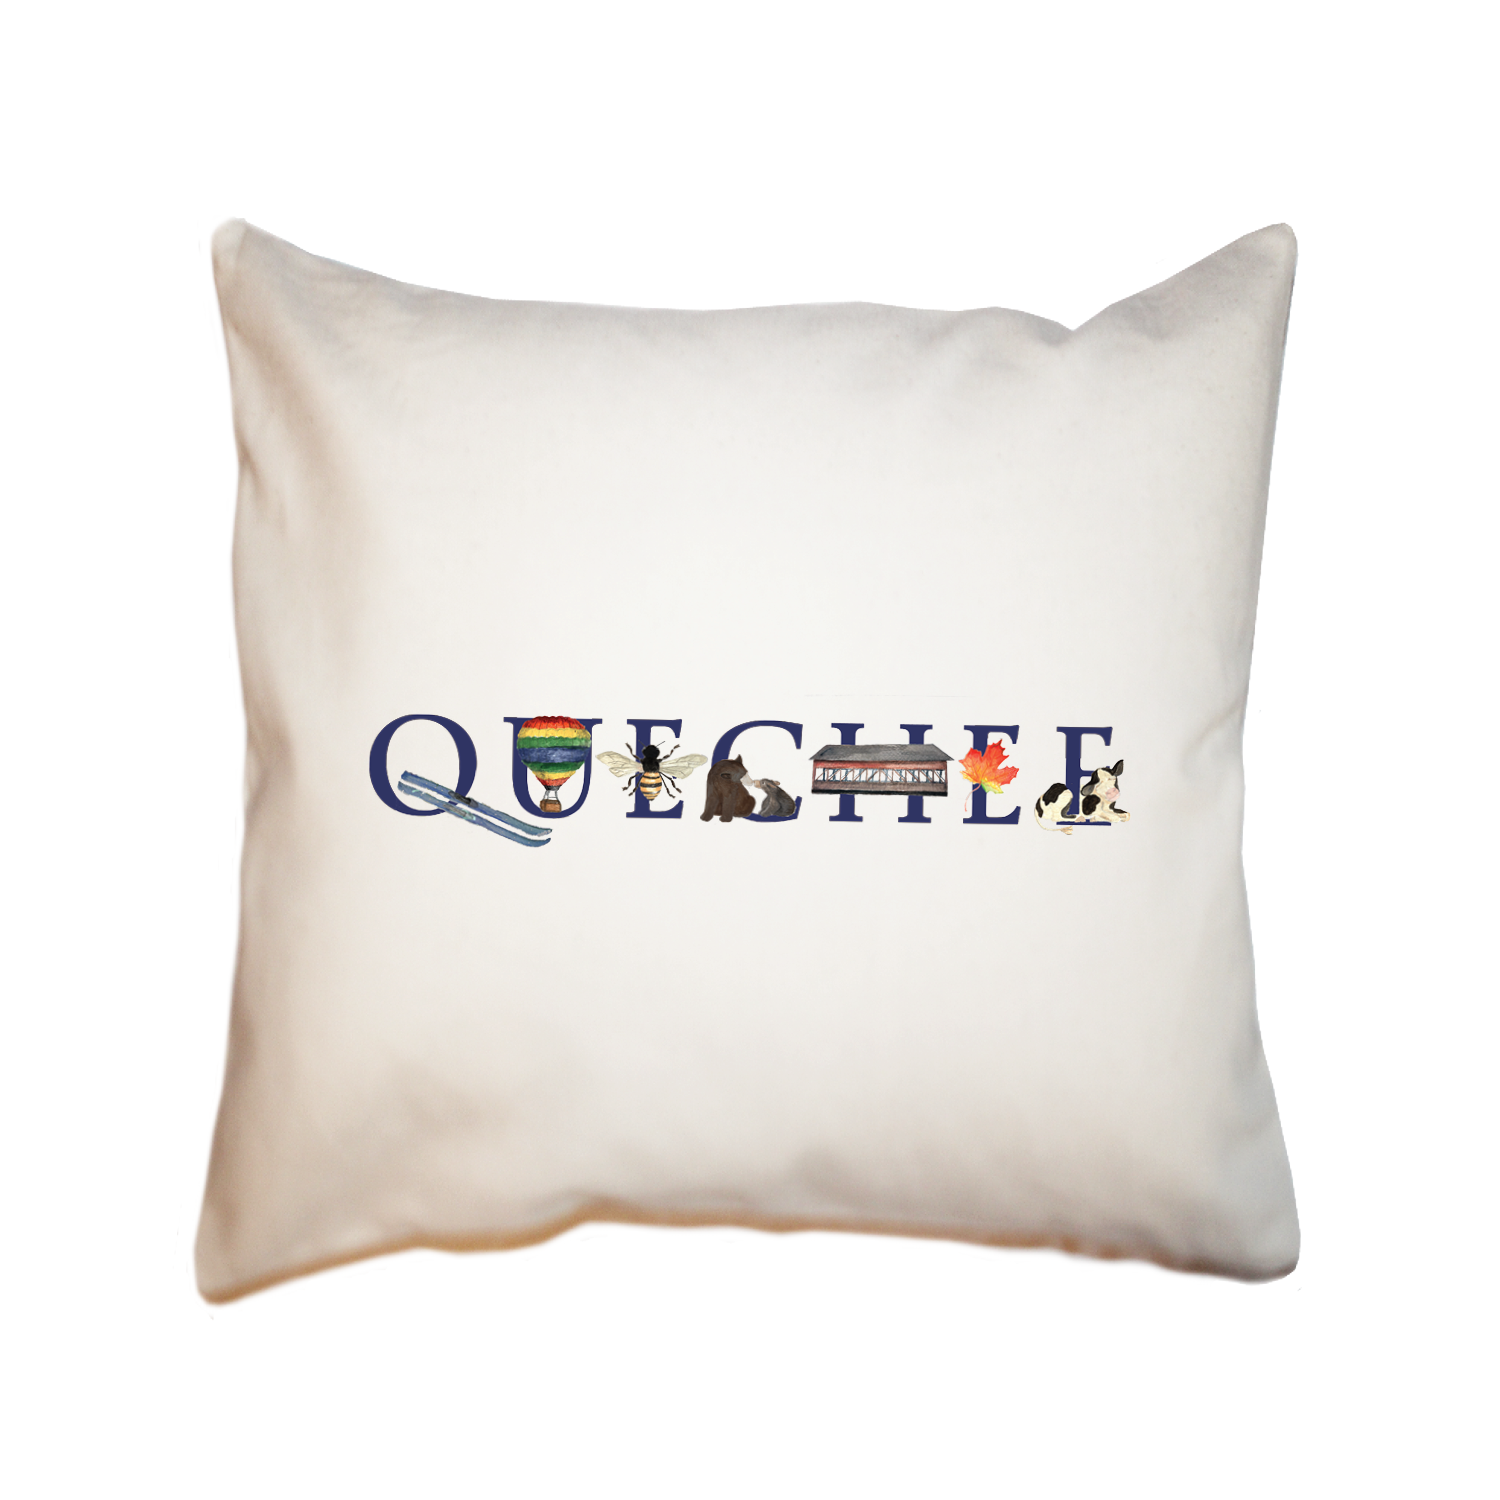 quechee square pillow